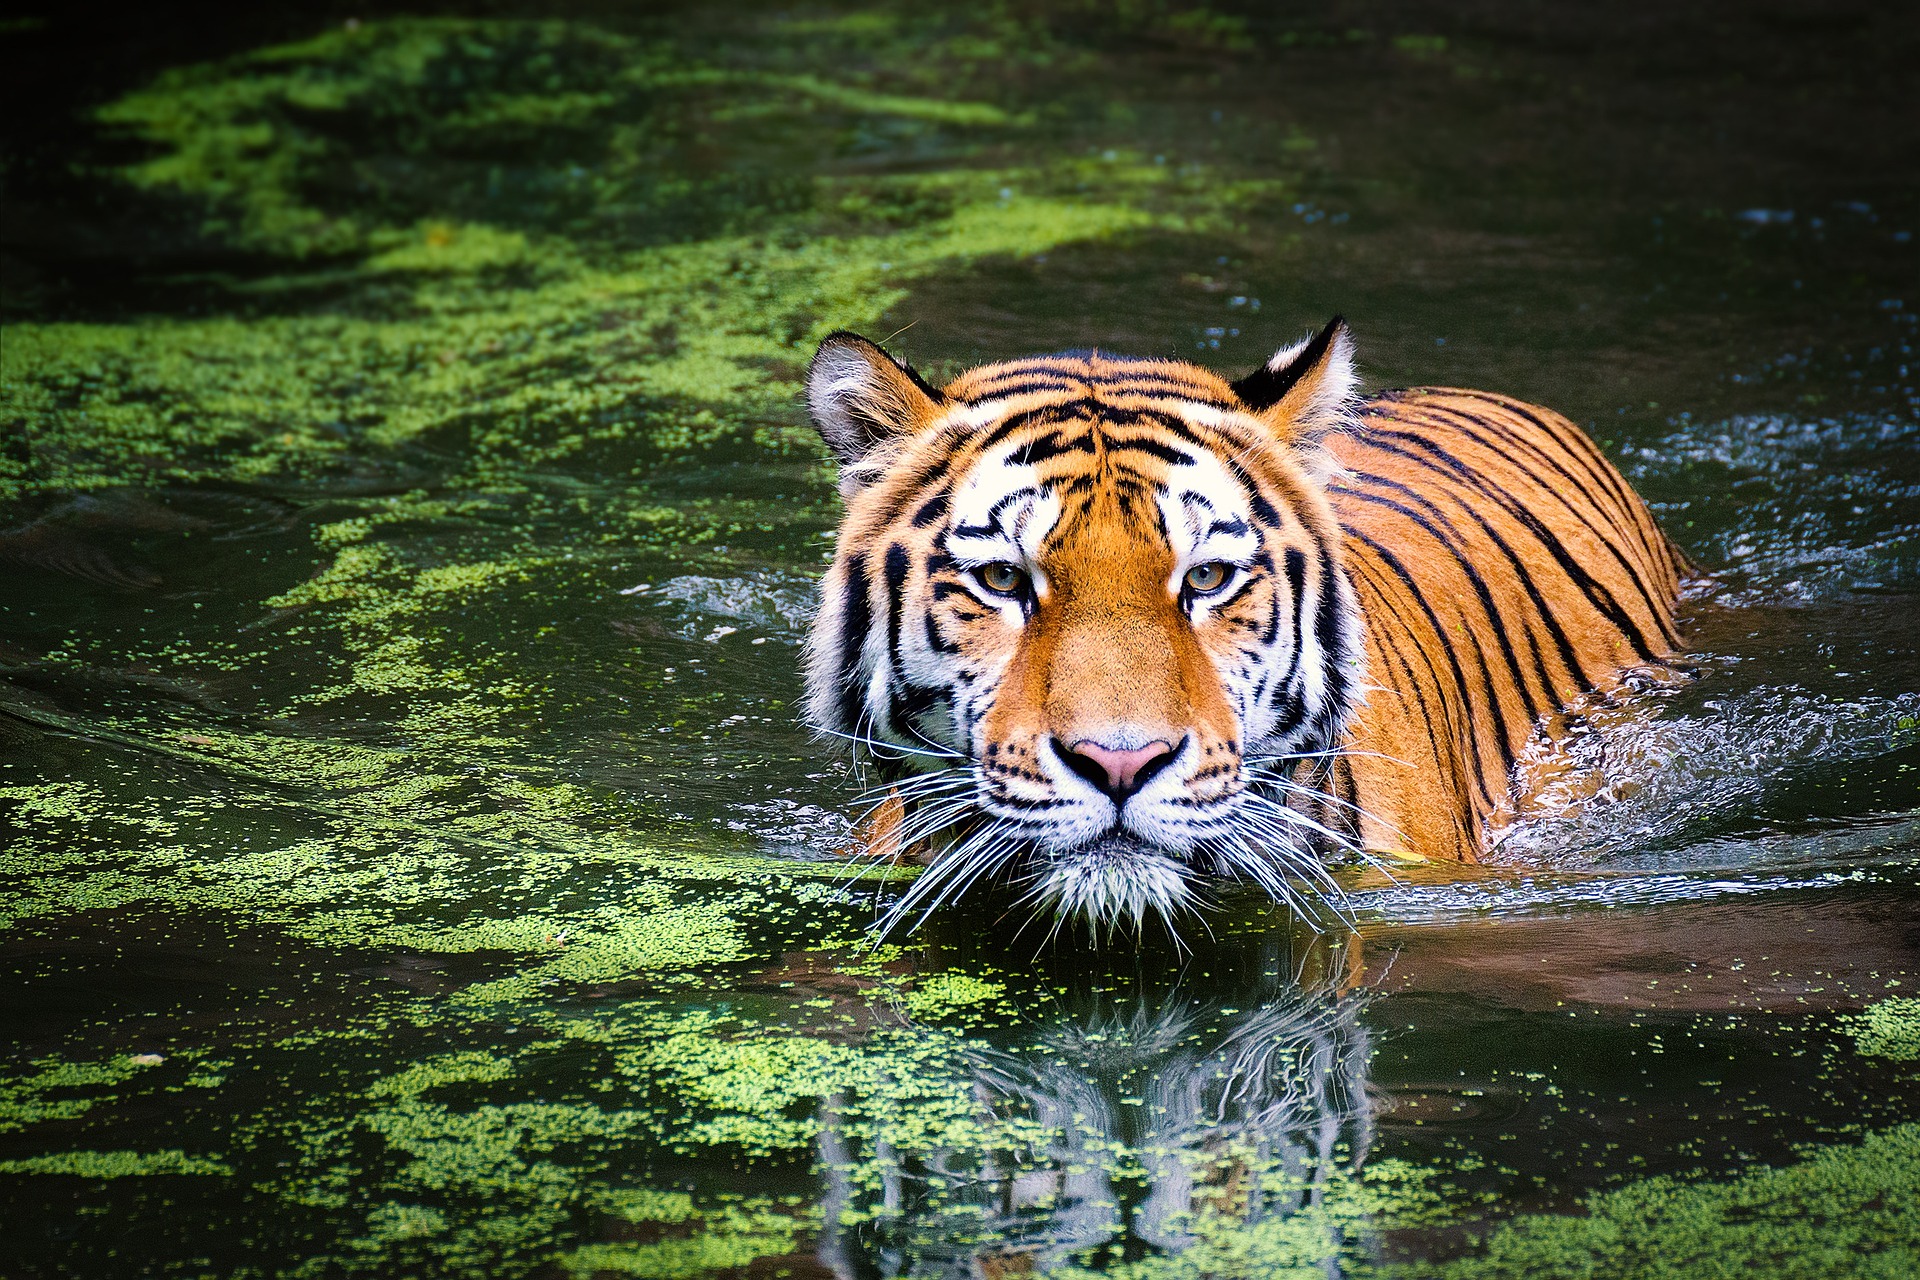 A tiger walks down a deep river